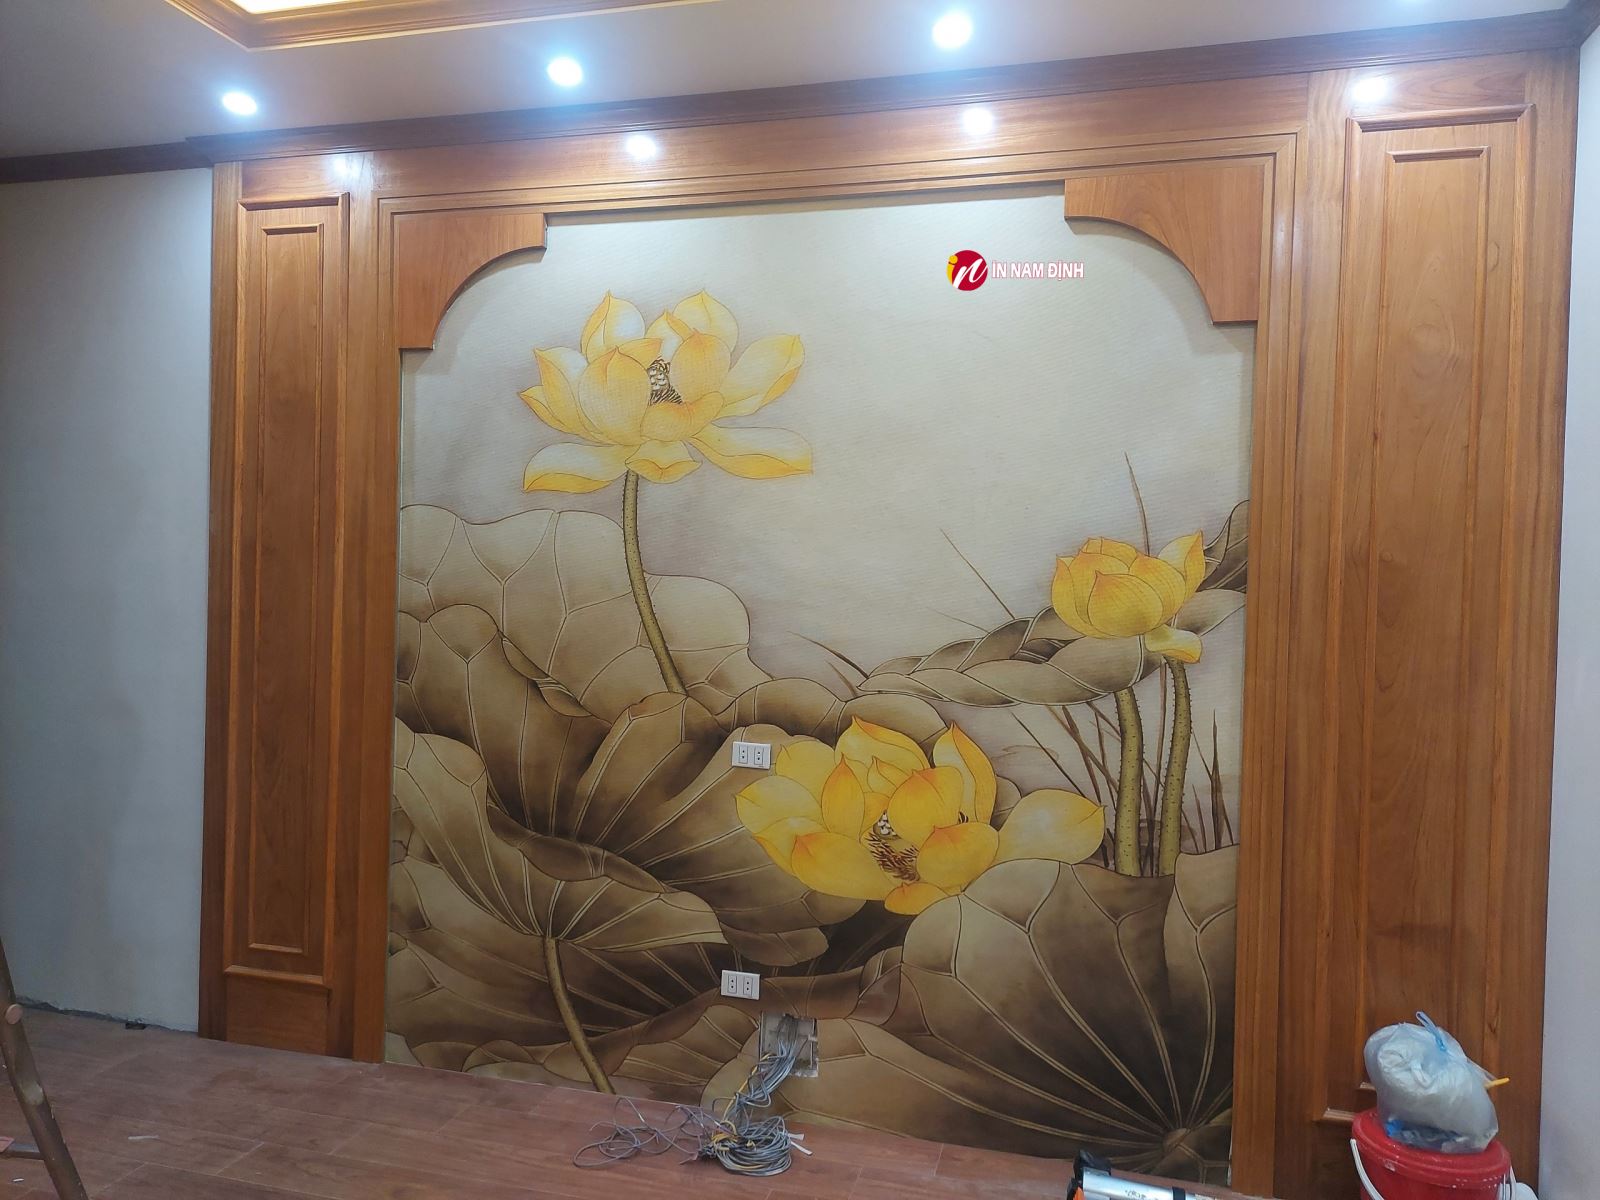 Ý nghĩa tranh trúc chỉ bàn thờ lưu giữ nét đẹp dân tộc cổ truyền tâm linh người Việt